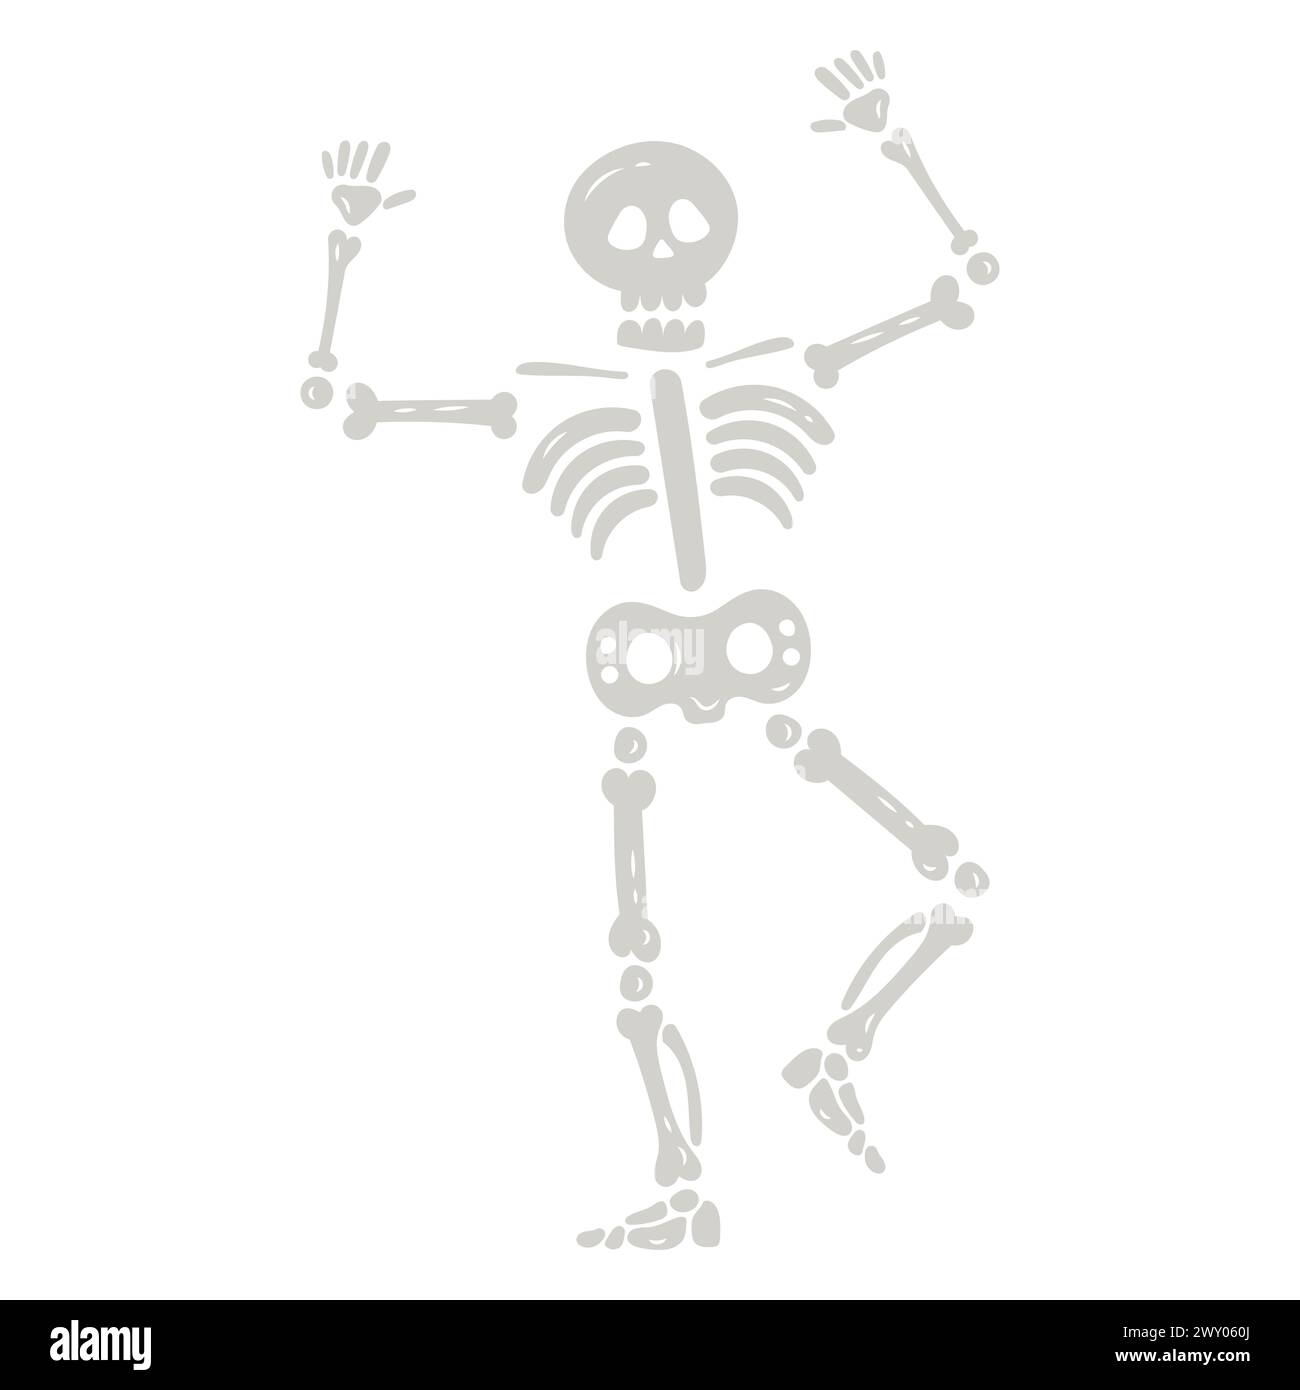 Les os du squelette humain Illustration de Vecteur